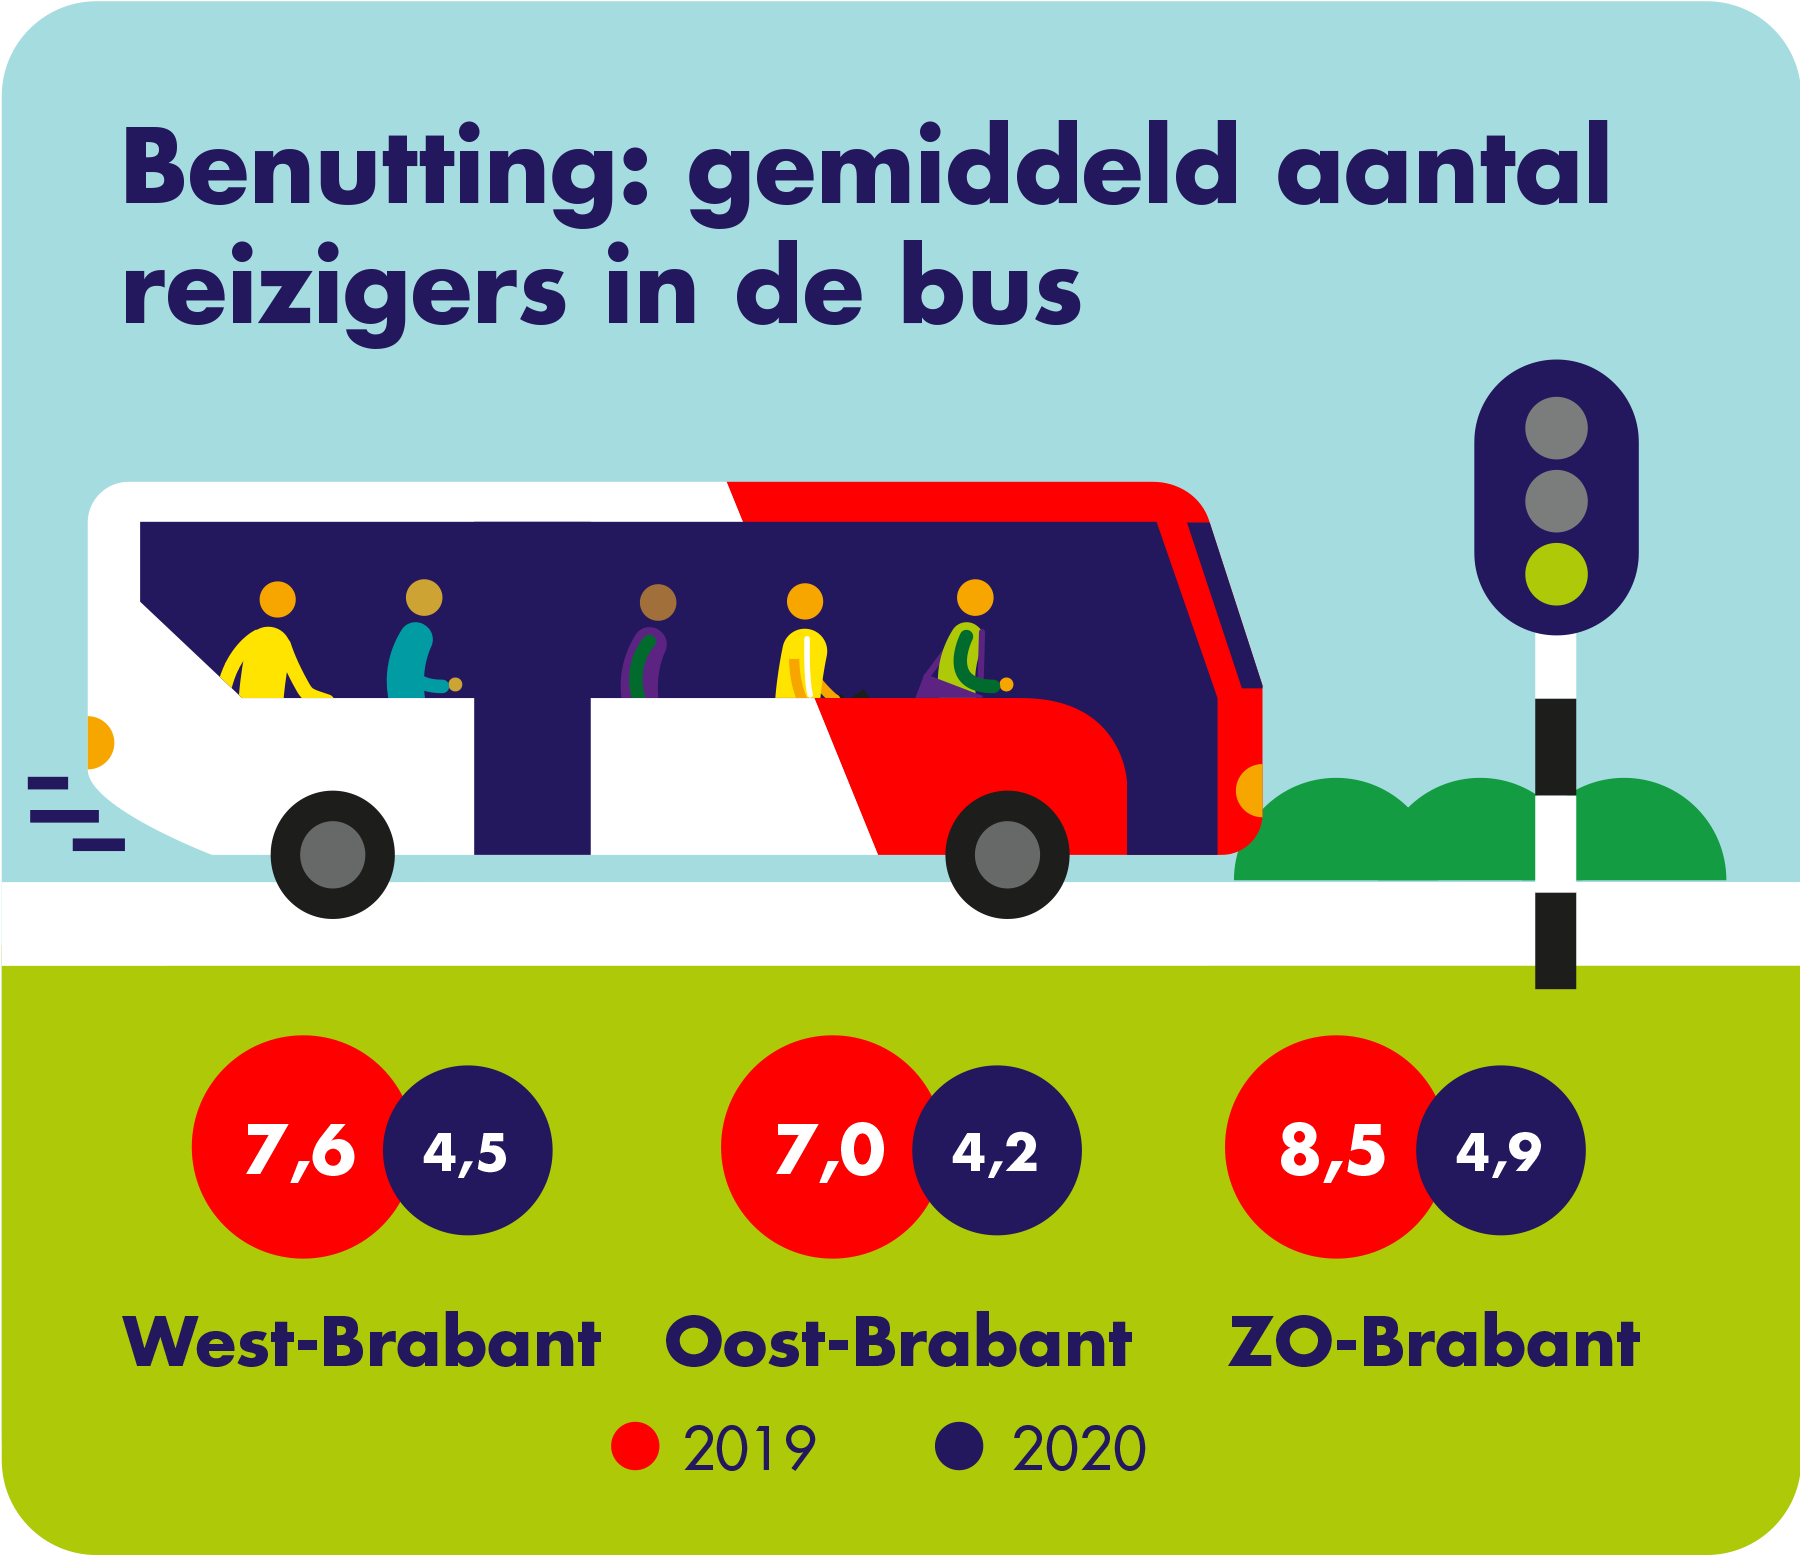 Benutting: gemiddeld aantal reizigers in de bus